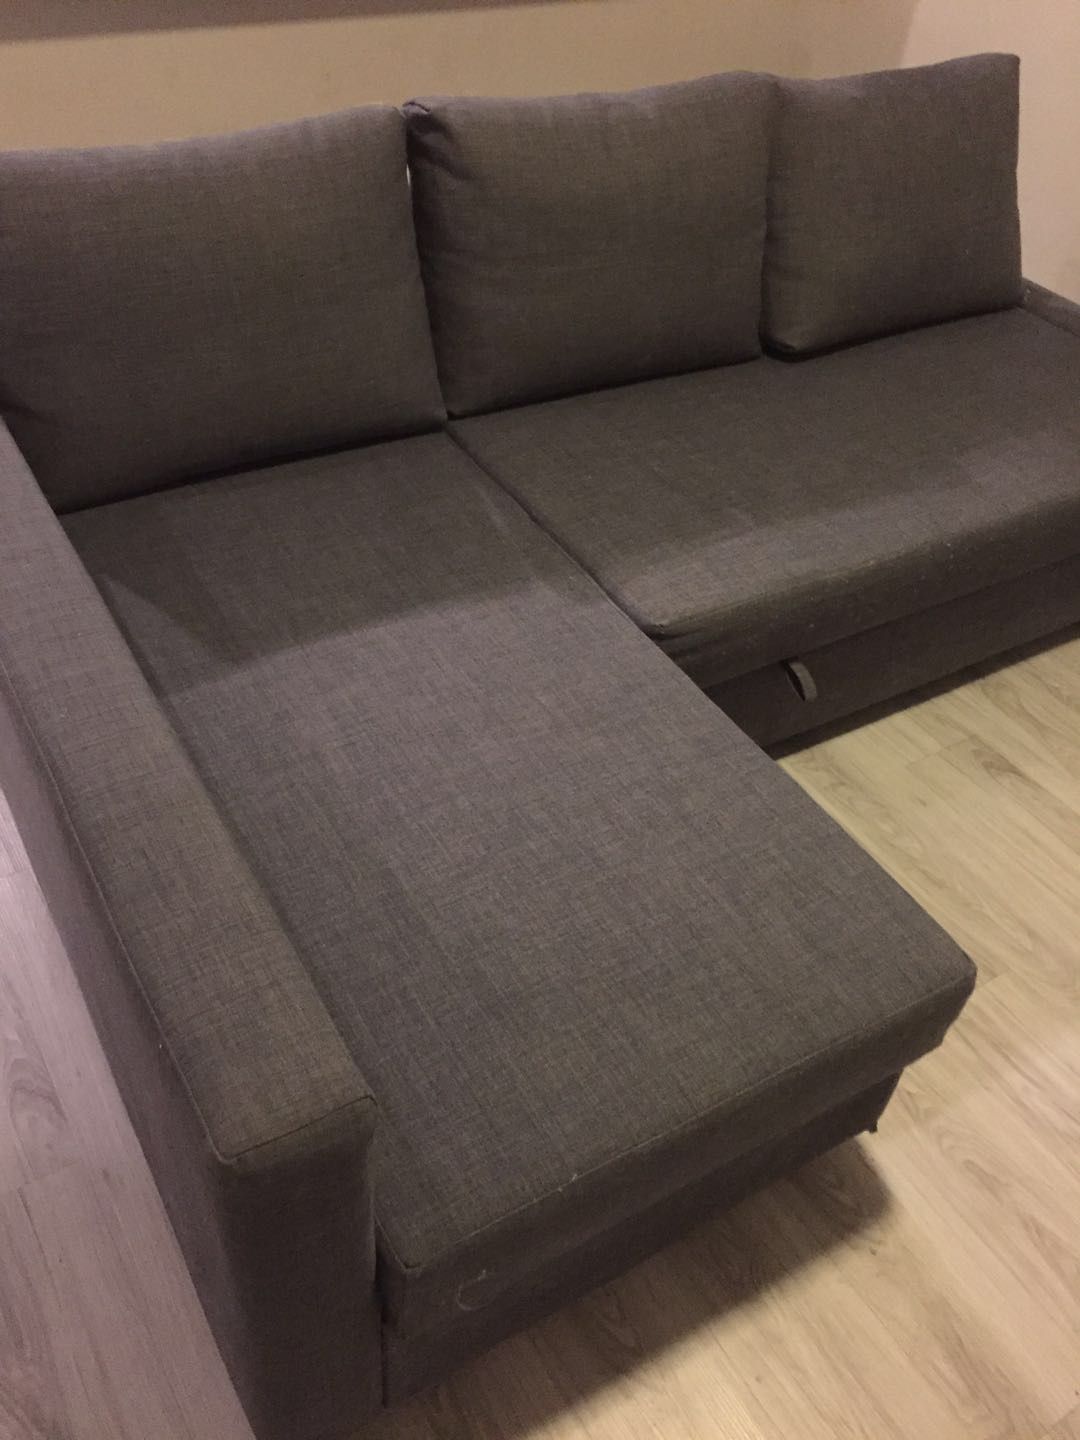 IKEA gray sofa